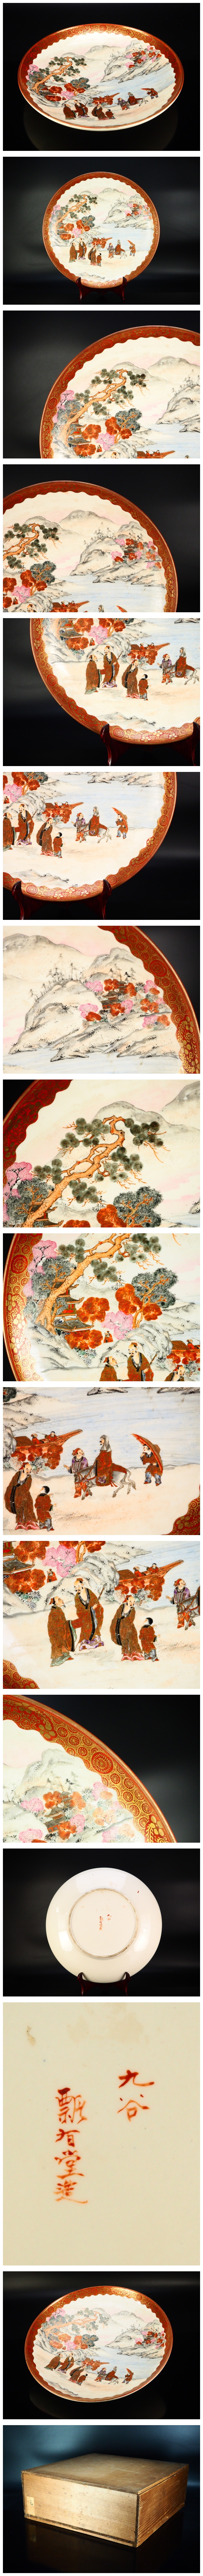 治】九谷『瓢有堂』造金彩色絵唐人山水風景図飾皿☆箱付幅33ｃｍ 金襴